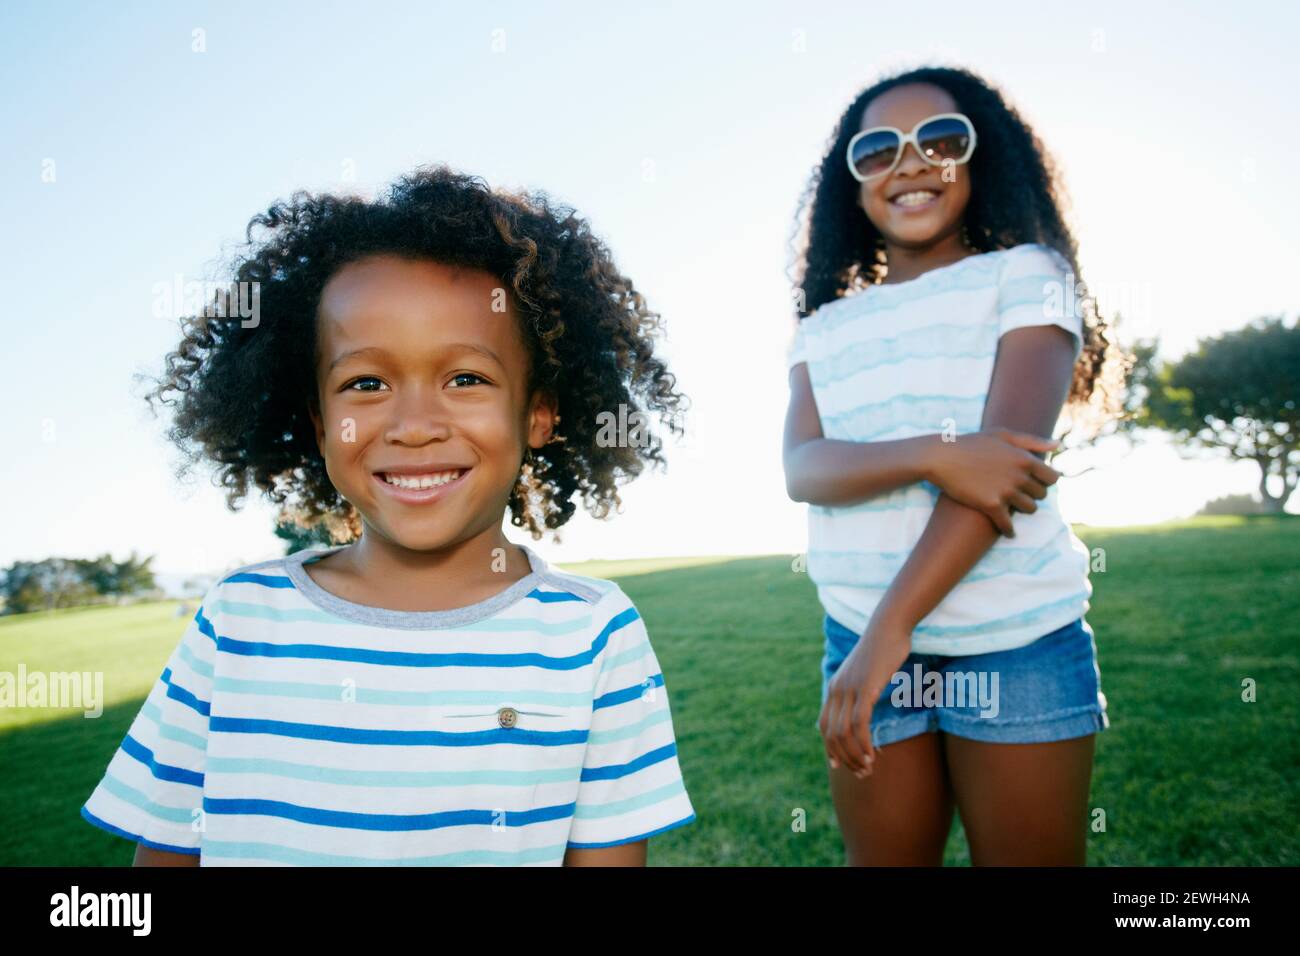 Junge gemischte Rasse Mädchen und Junge, Bruder und Schwester, im Freien Stockfoto